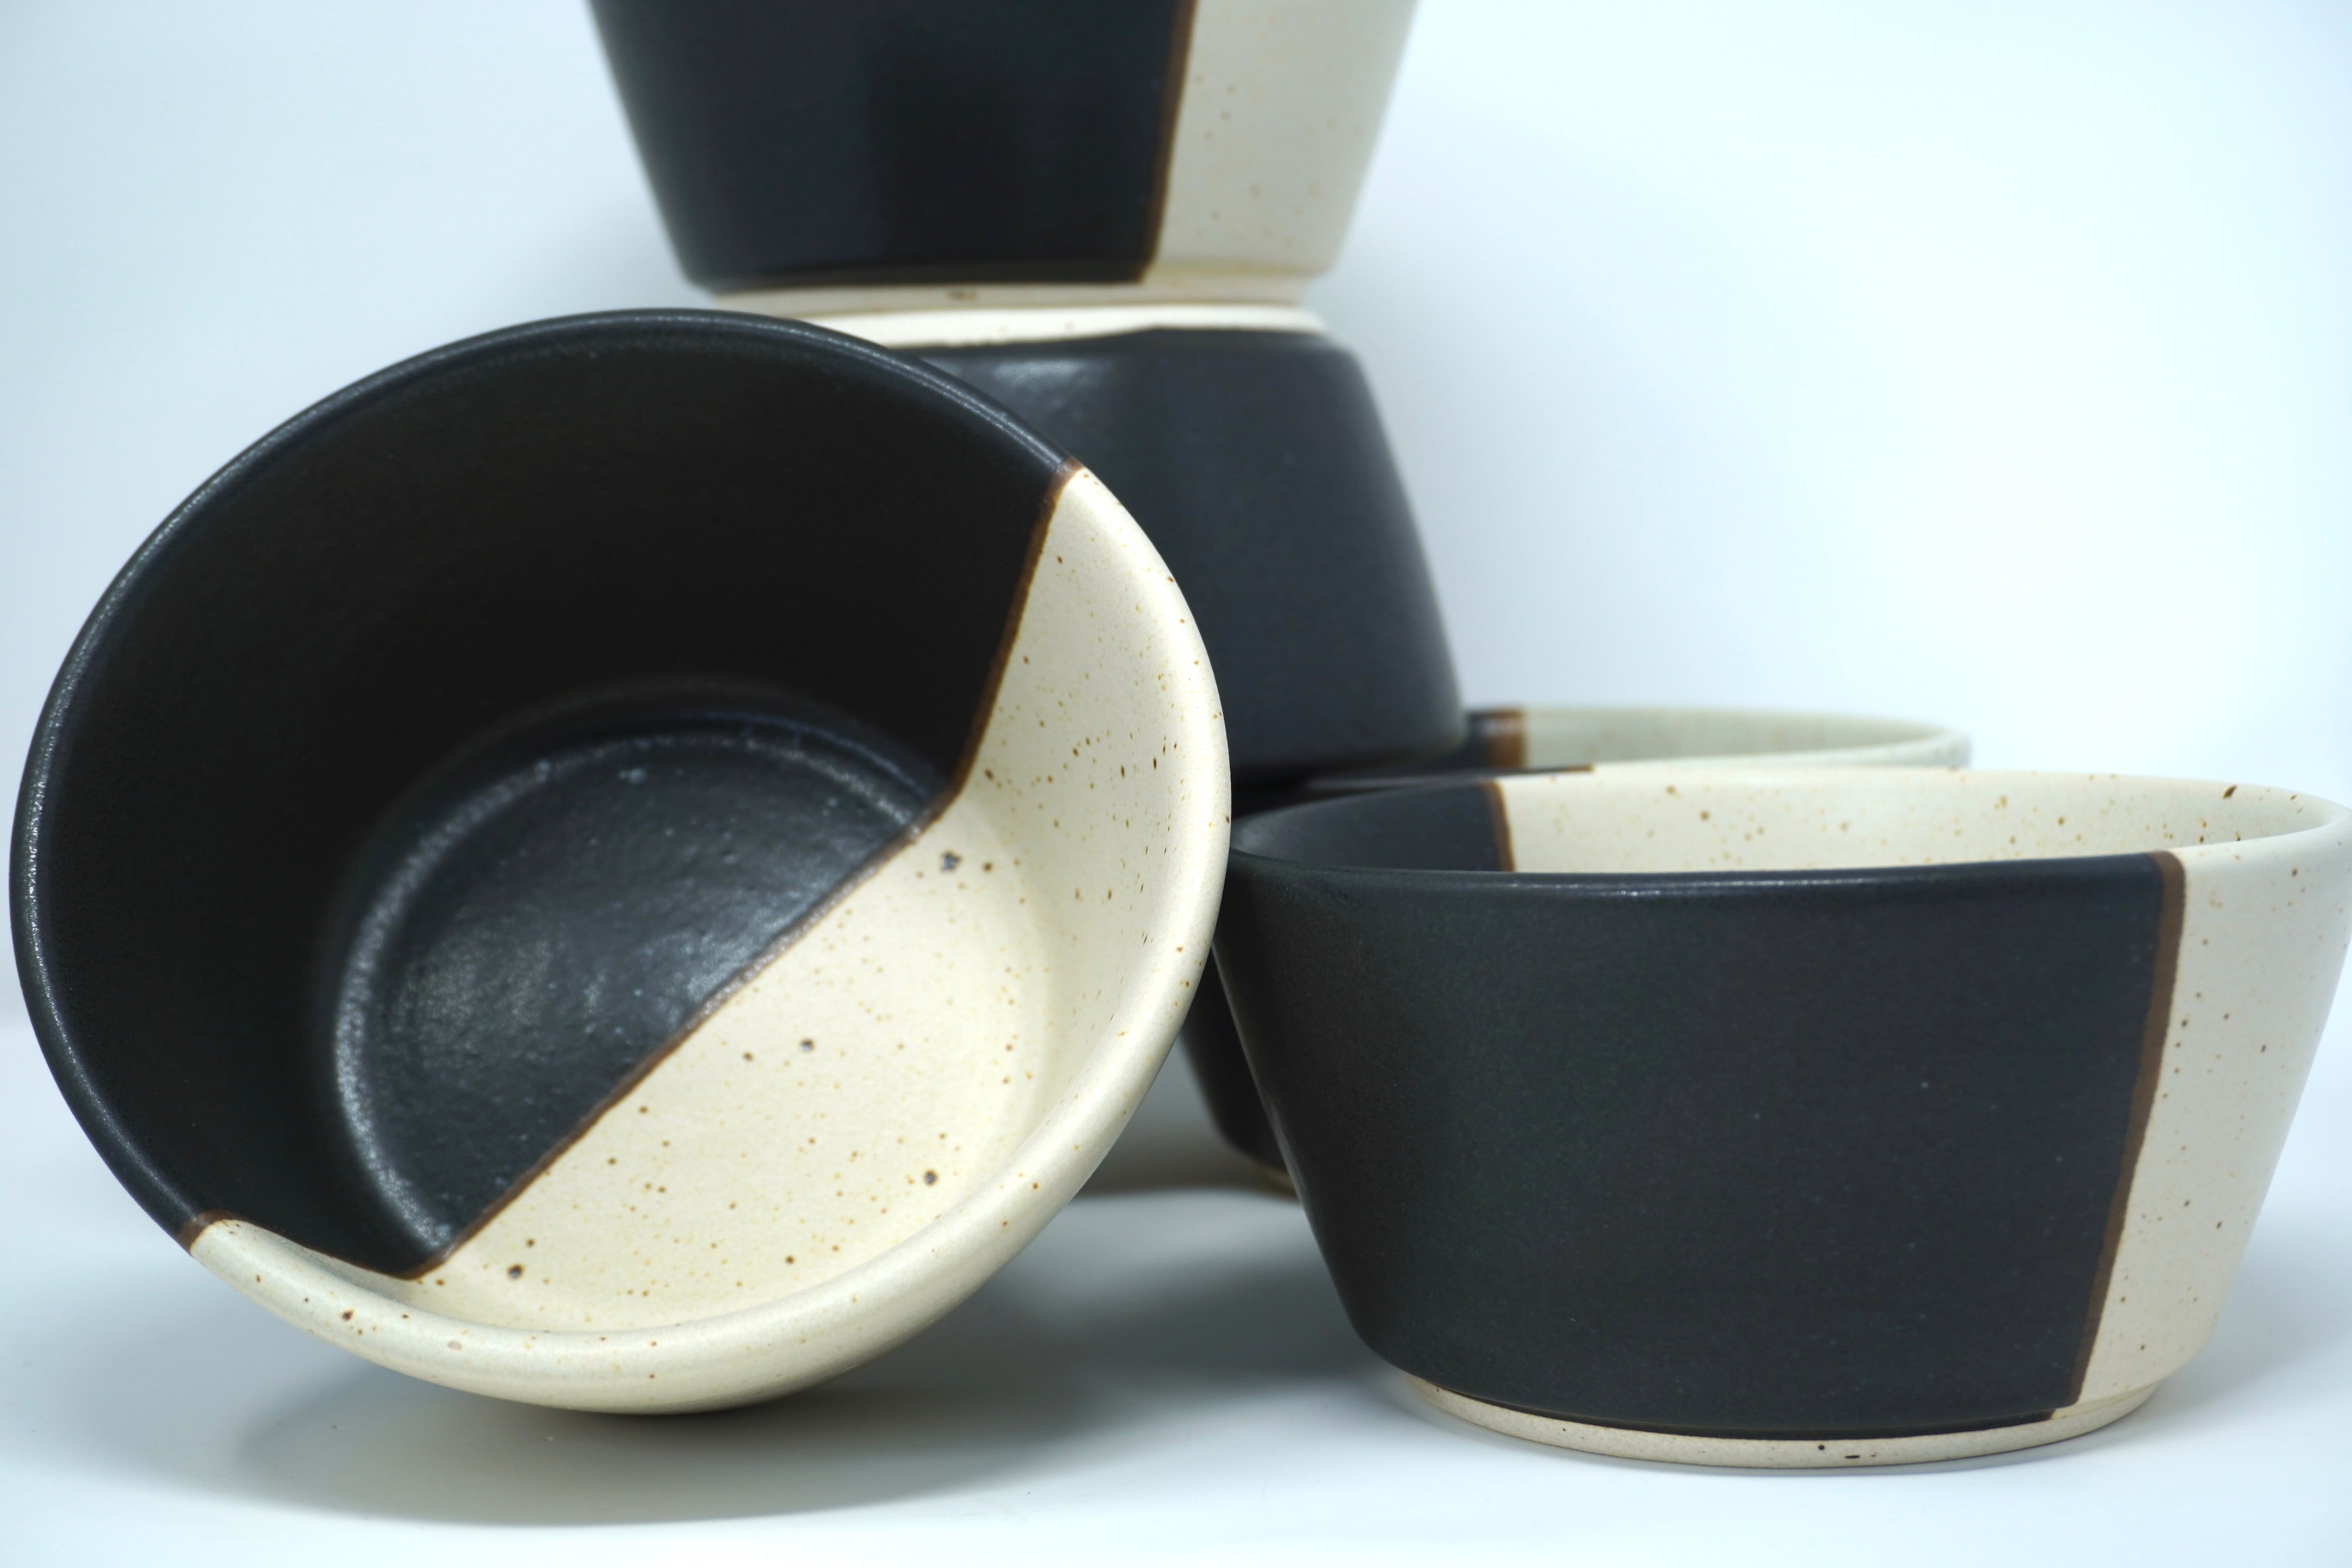 Duo Arena blanca & Piedra negra | Set de 6 bowls pozoleros línea rústica